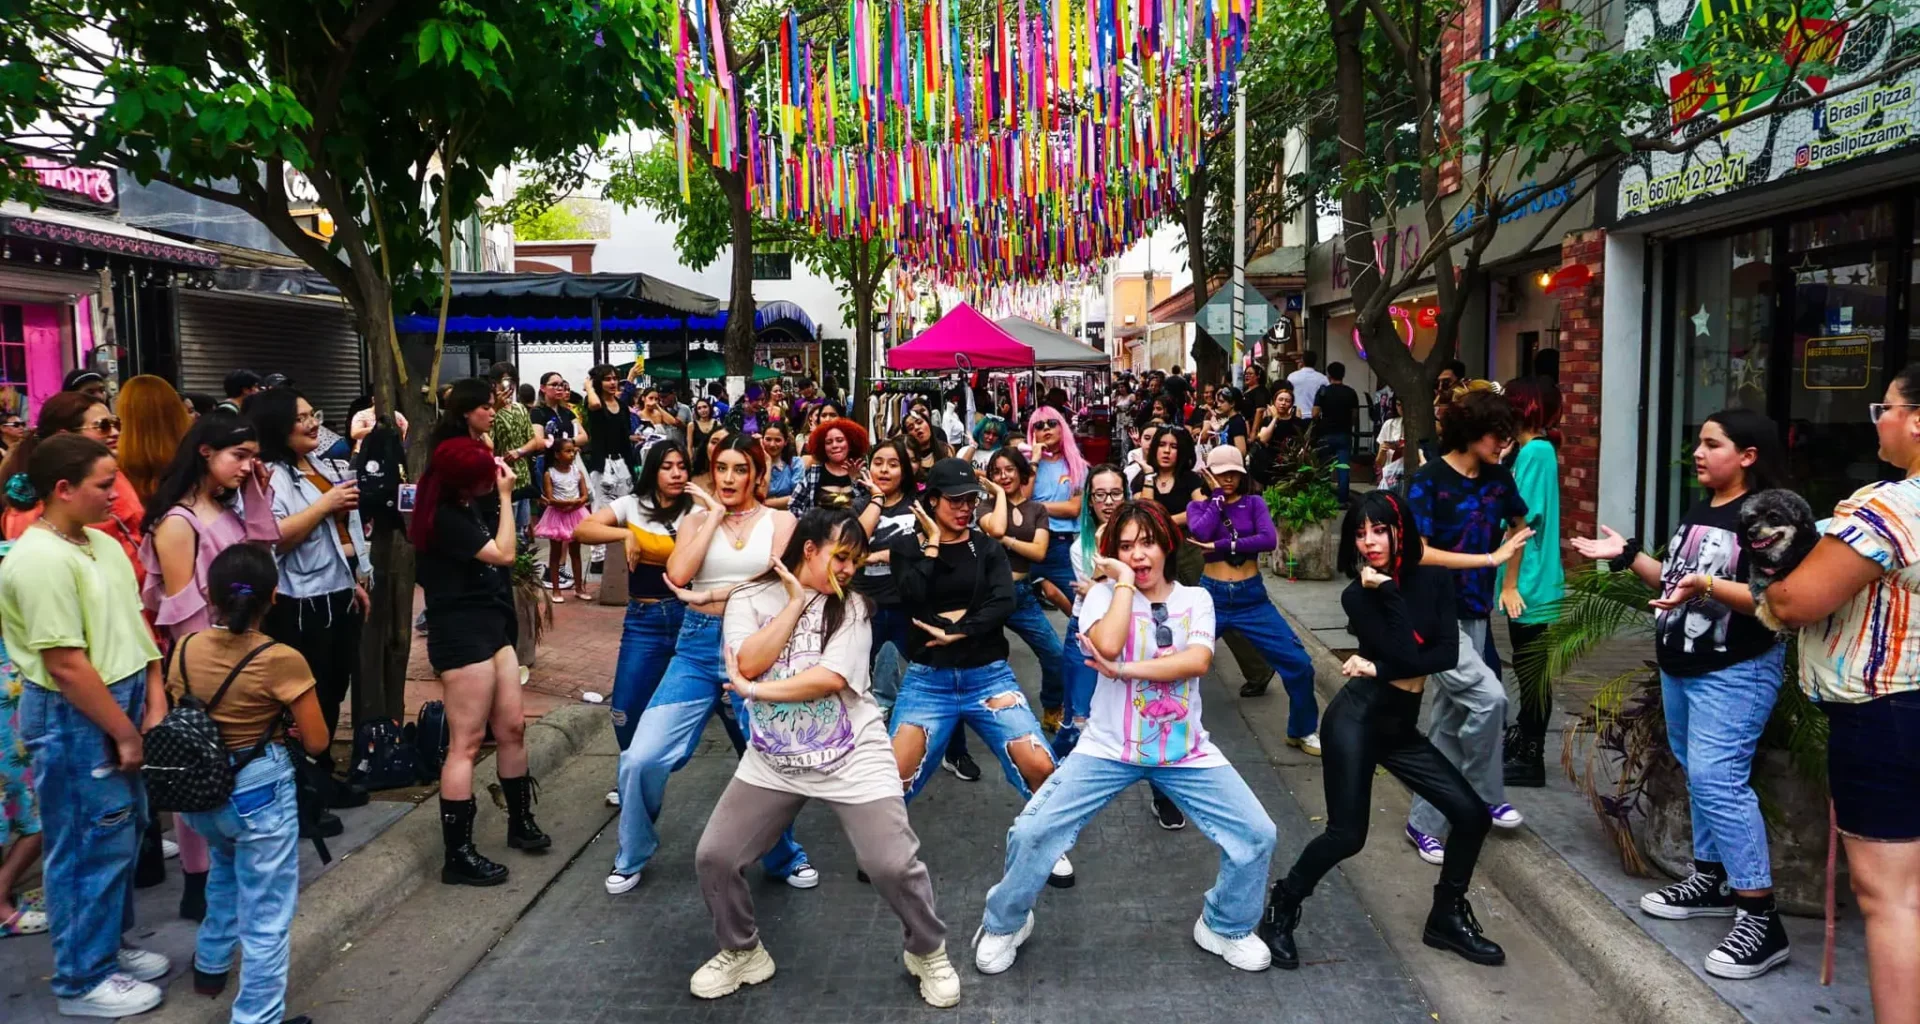 komorebi fest callejon coreano culiacan sinaloa 6